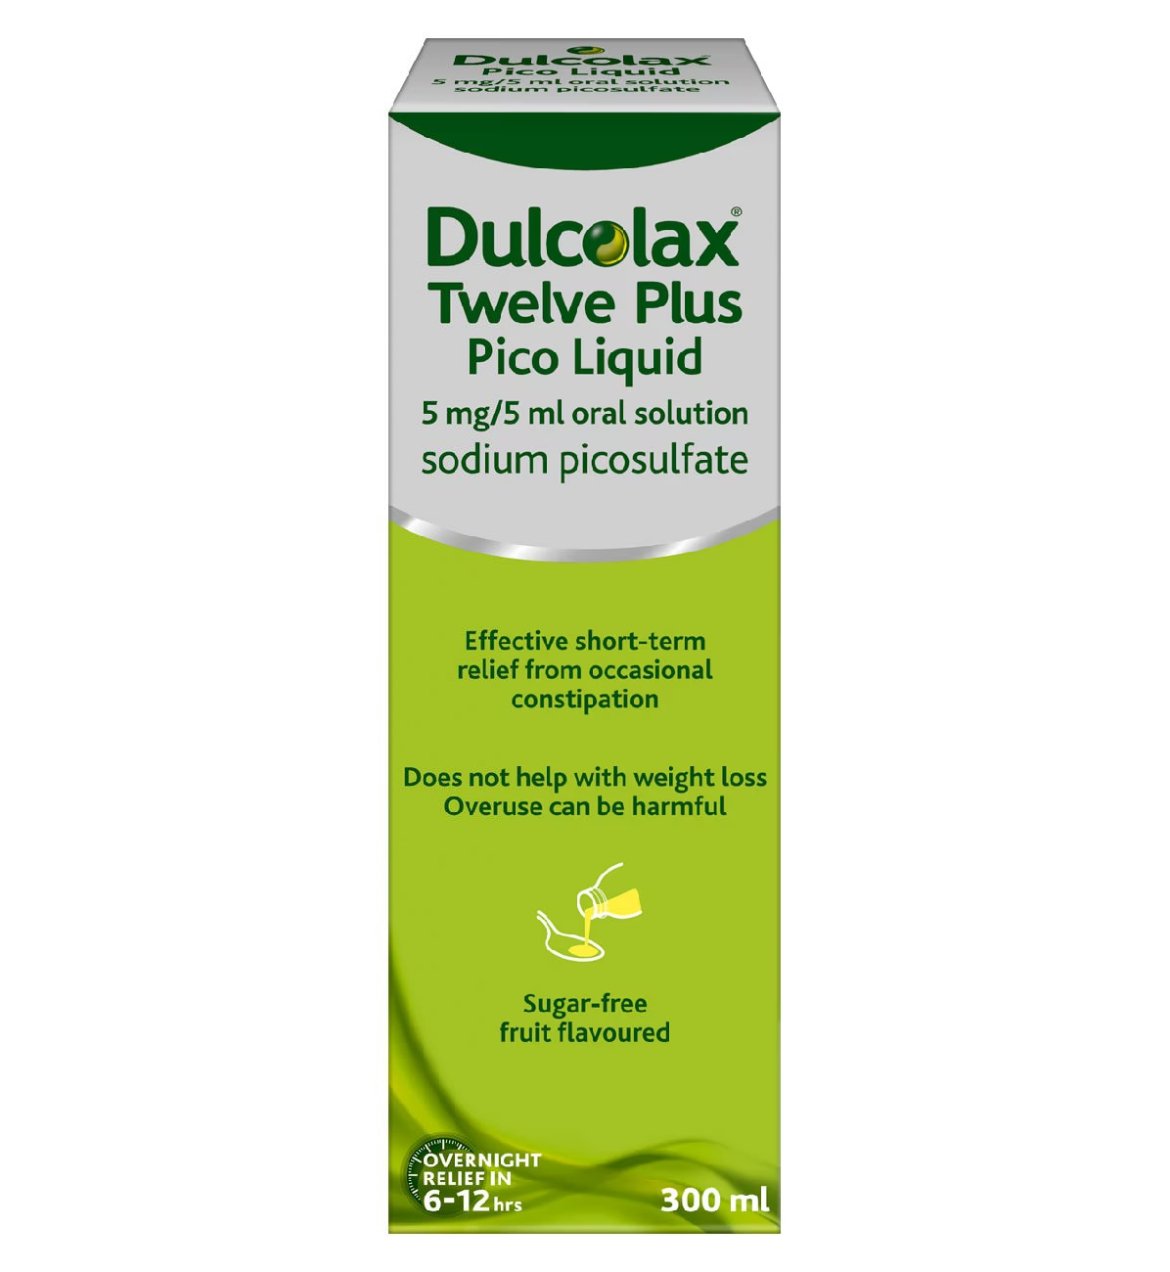 Dulcolax Twelve Plus Pico Liquid Laxative (Sodium Picosulfate) – 300ml